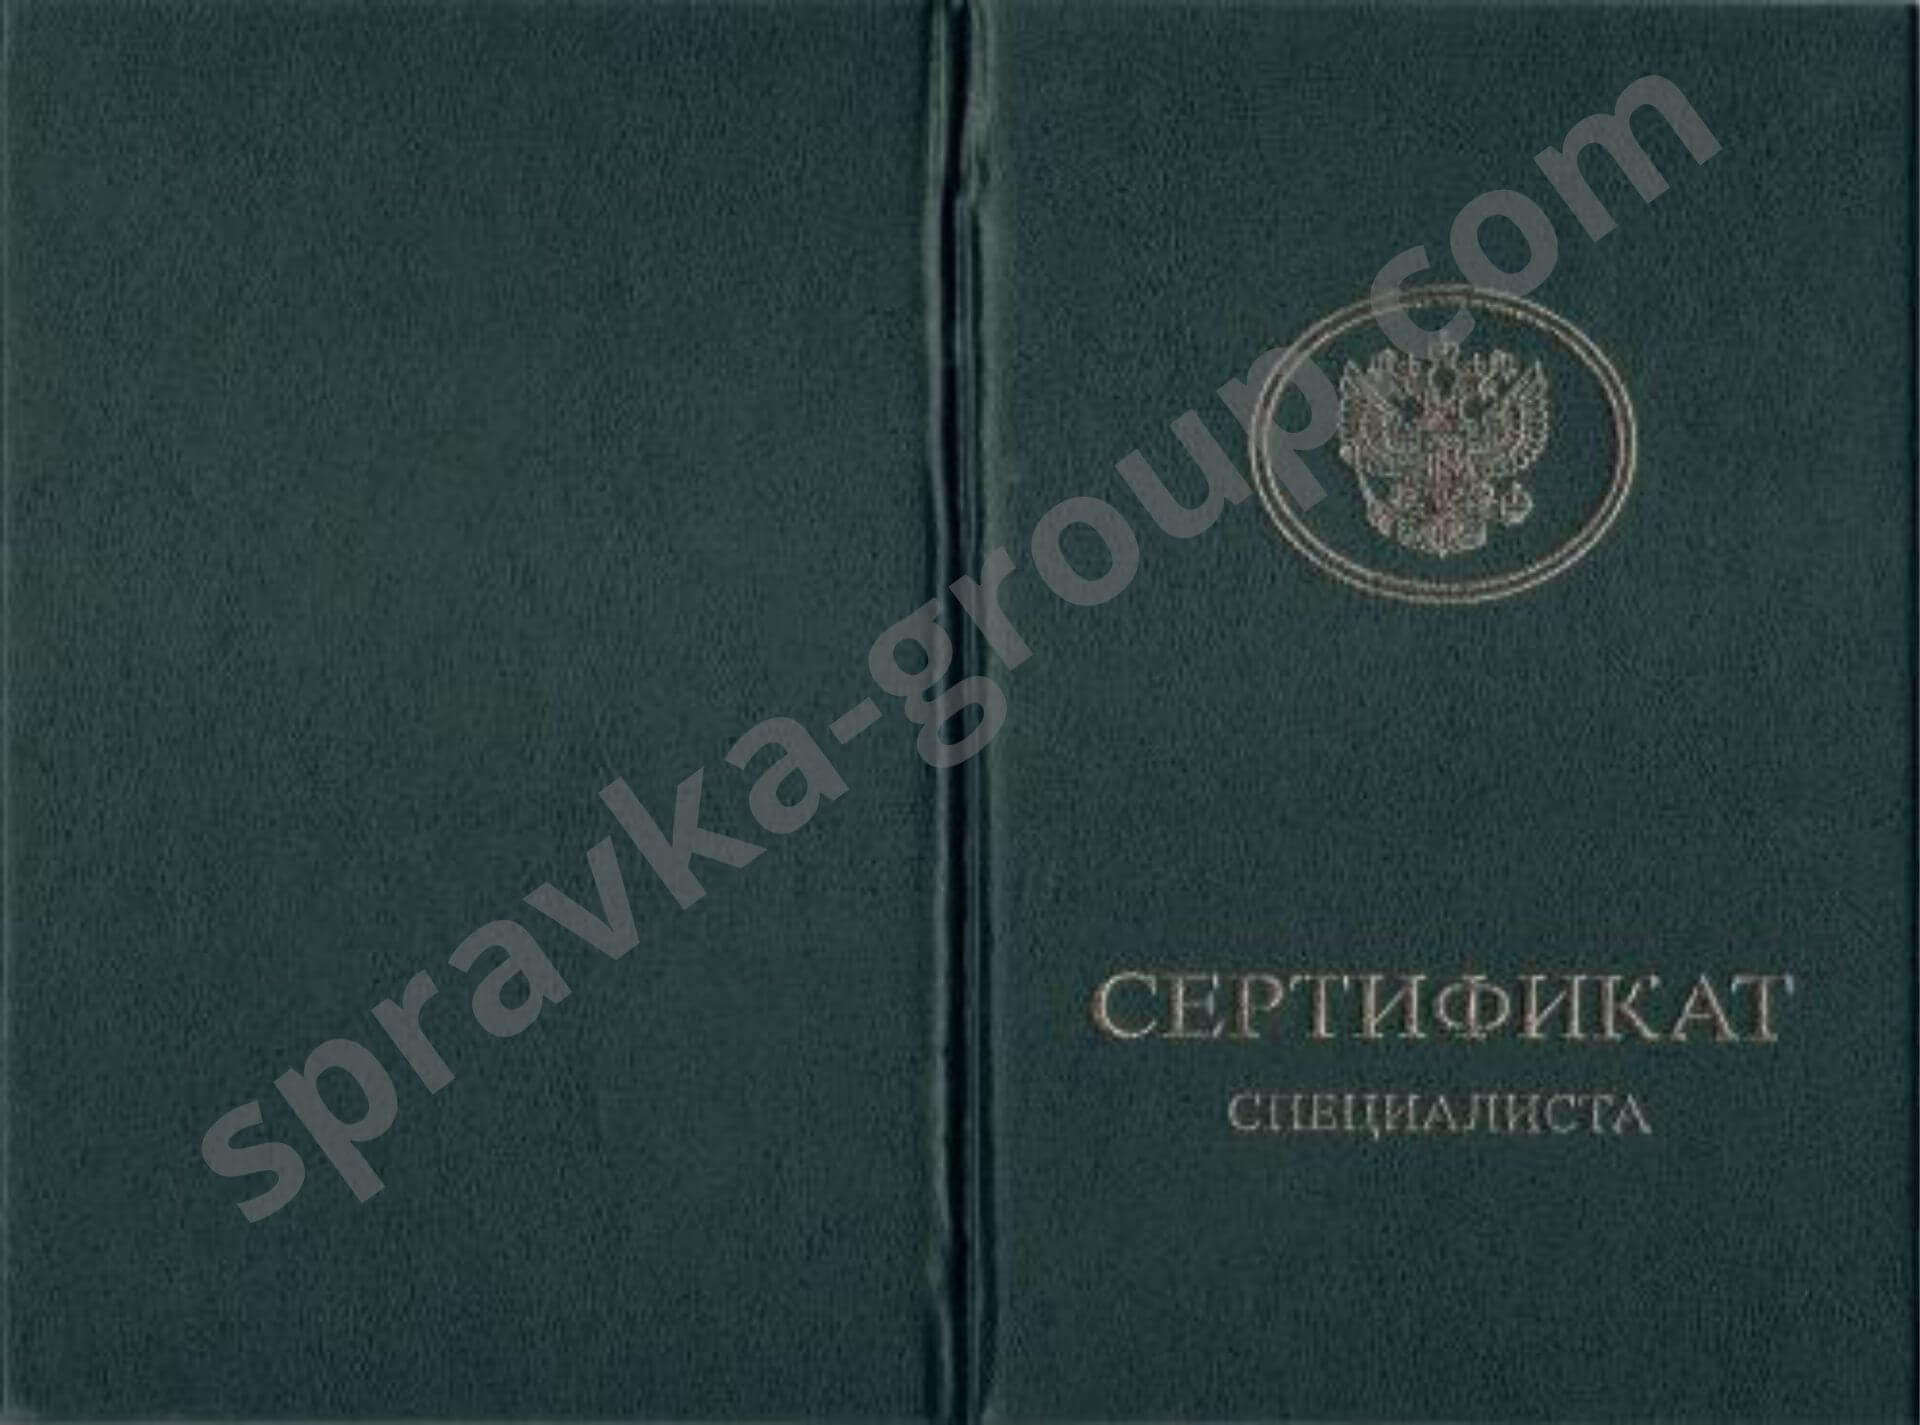 Купить сертификат медицинской сестры в Москве, фото №3